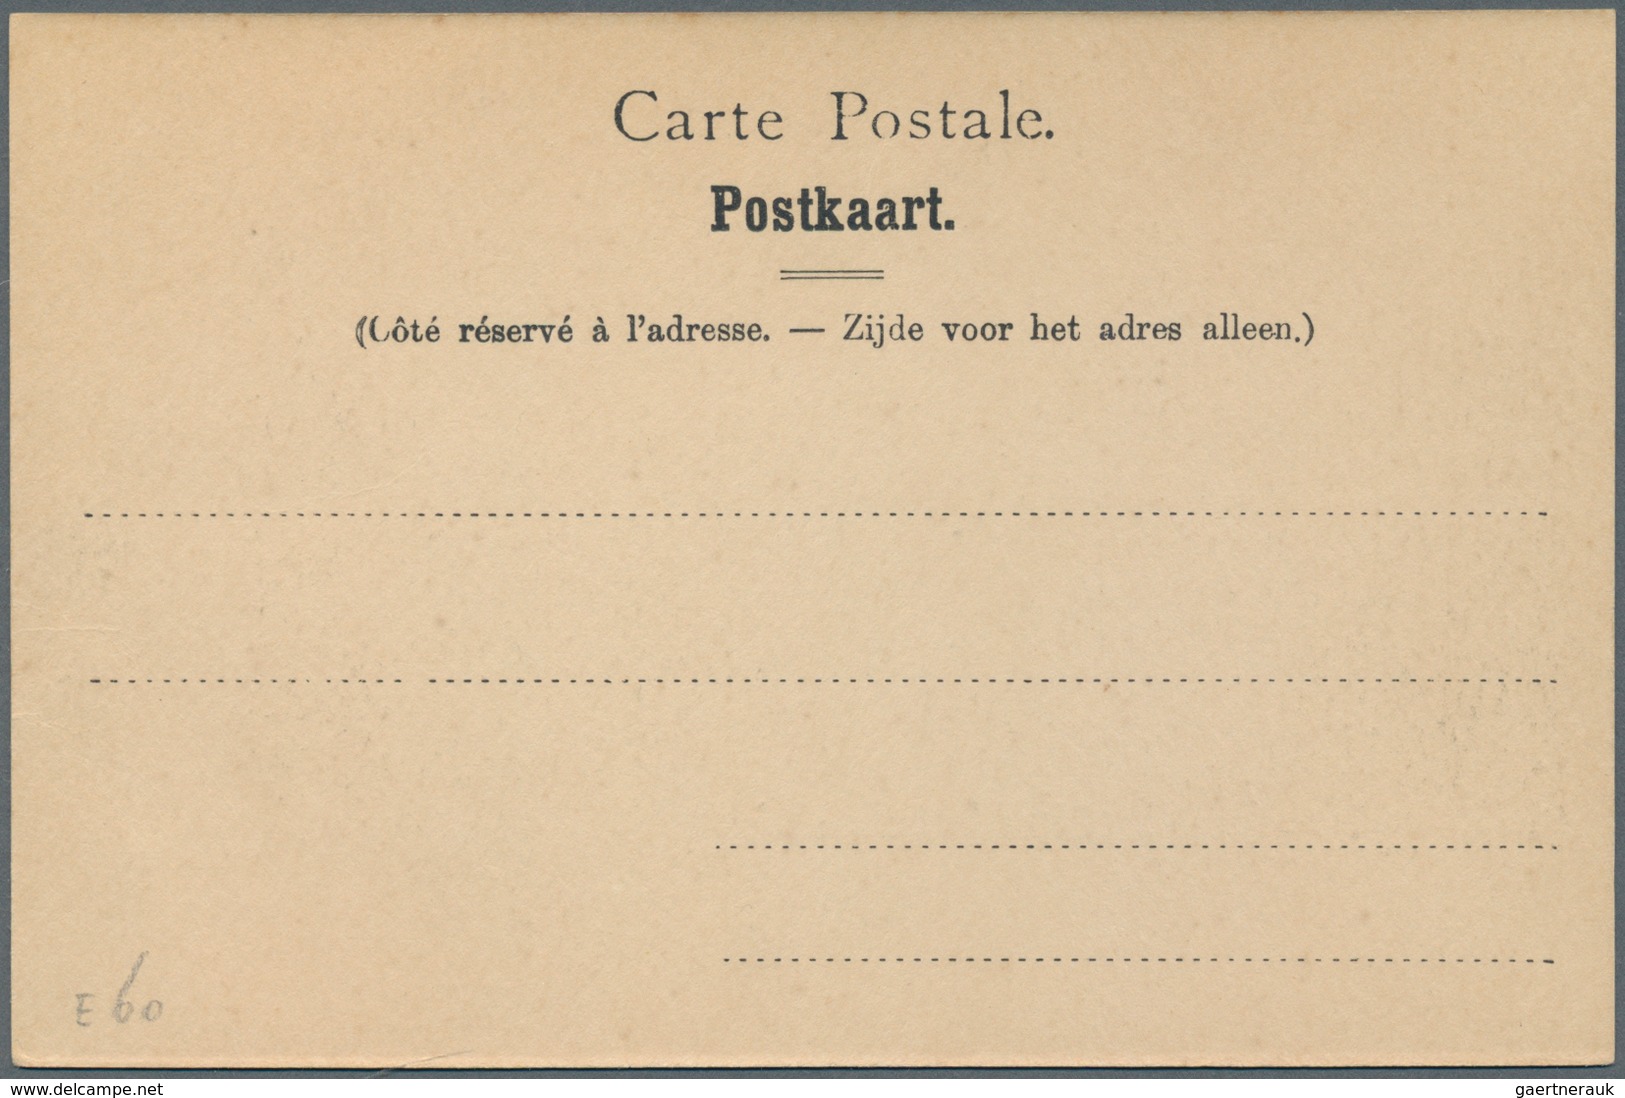 Belgien - Besonderheiten: 1898 (ca.) eight unused postcards of the Belgian Antarctic expedition, rar